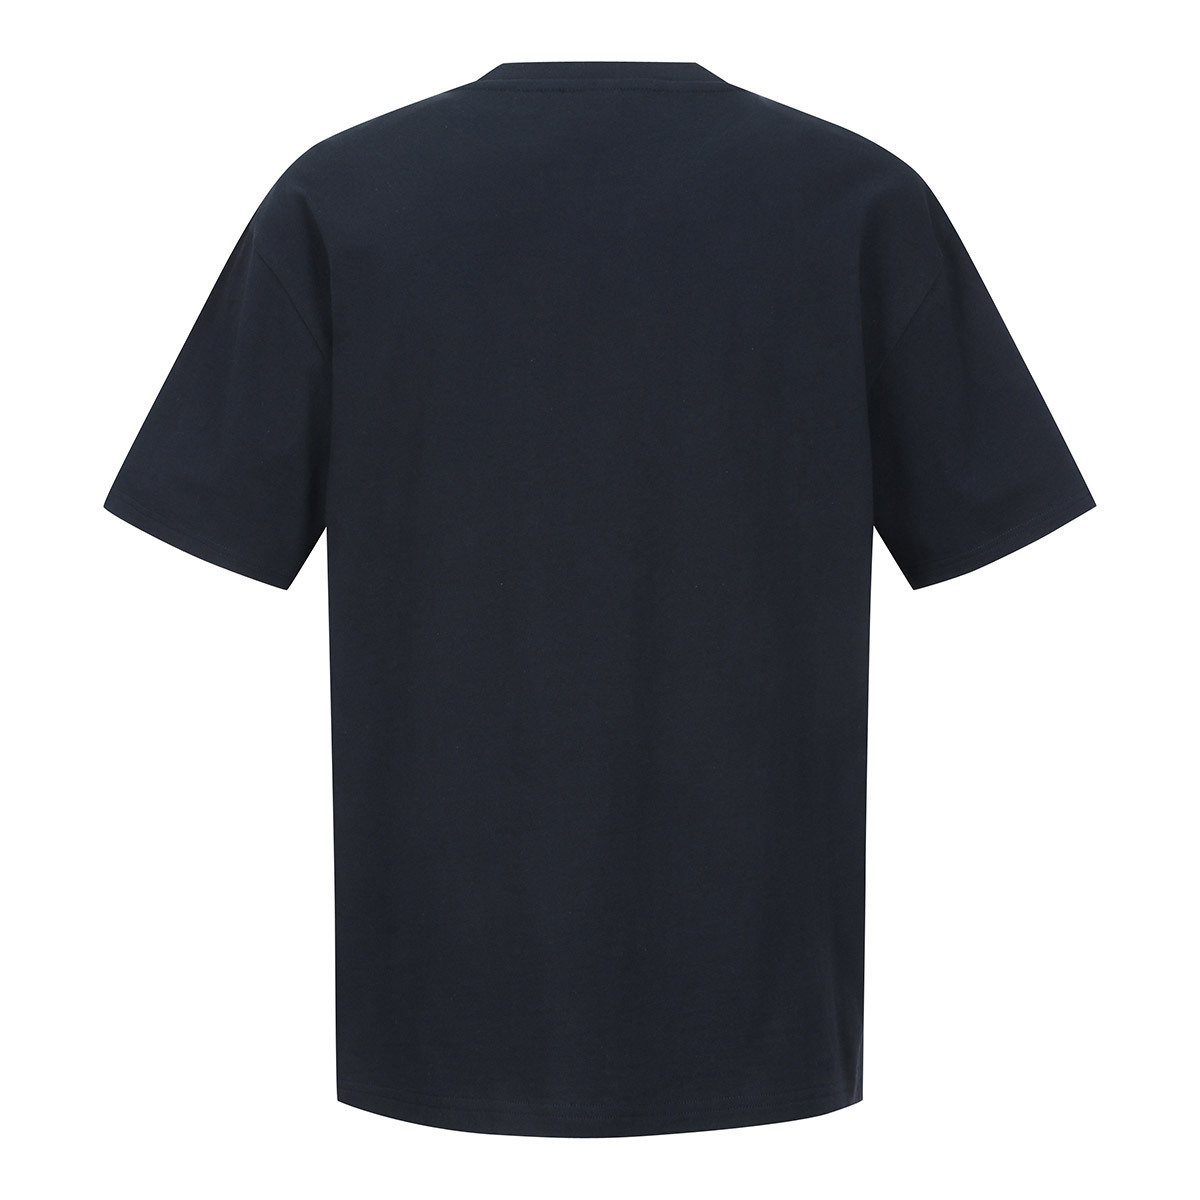 쿨트 성인 반소매 티셔츠 - 네이비